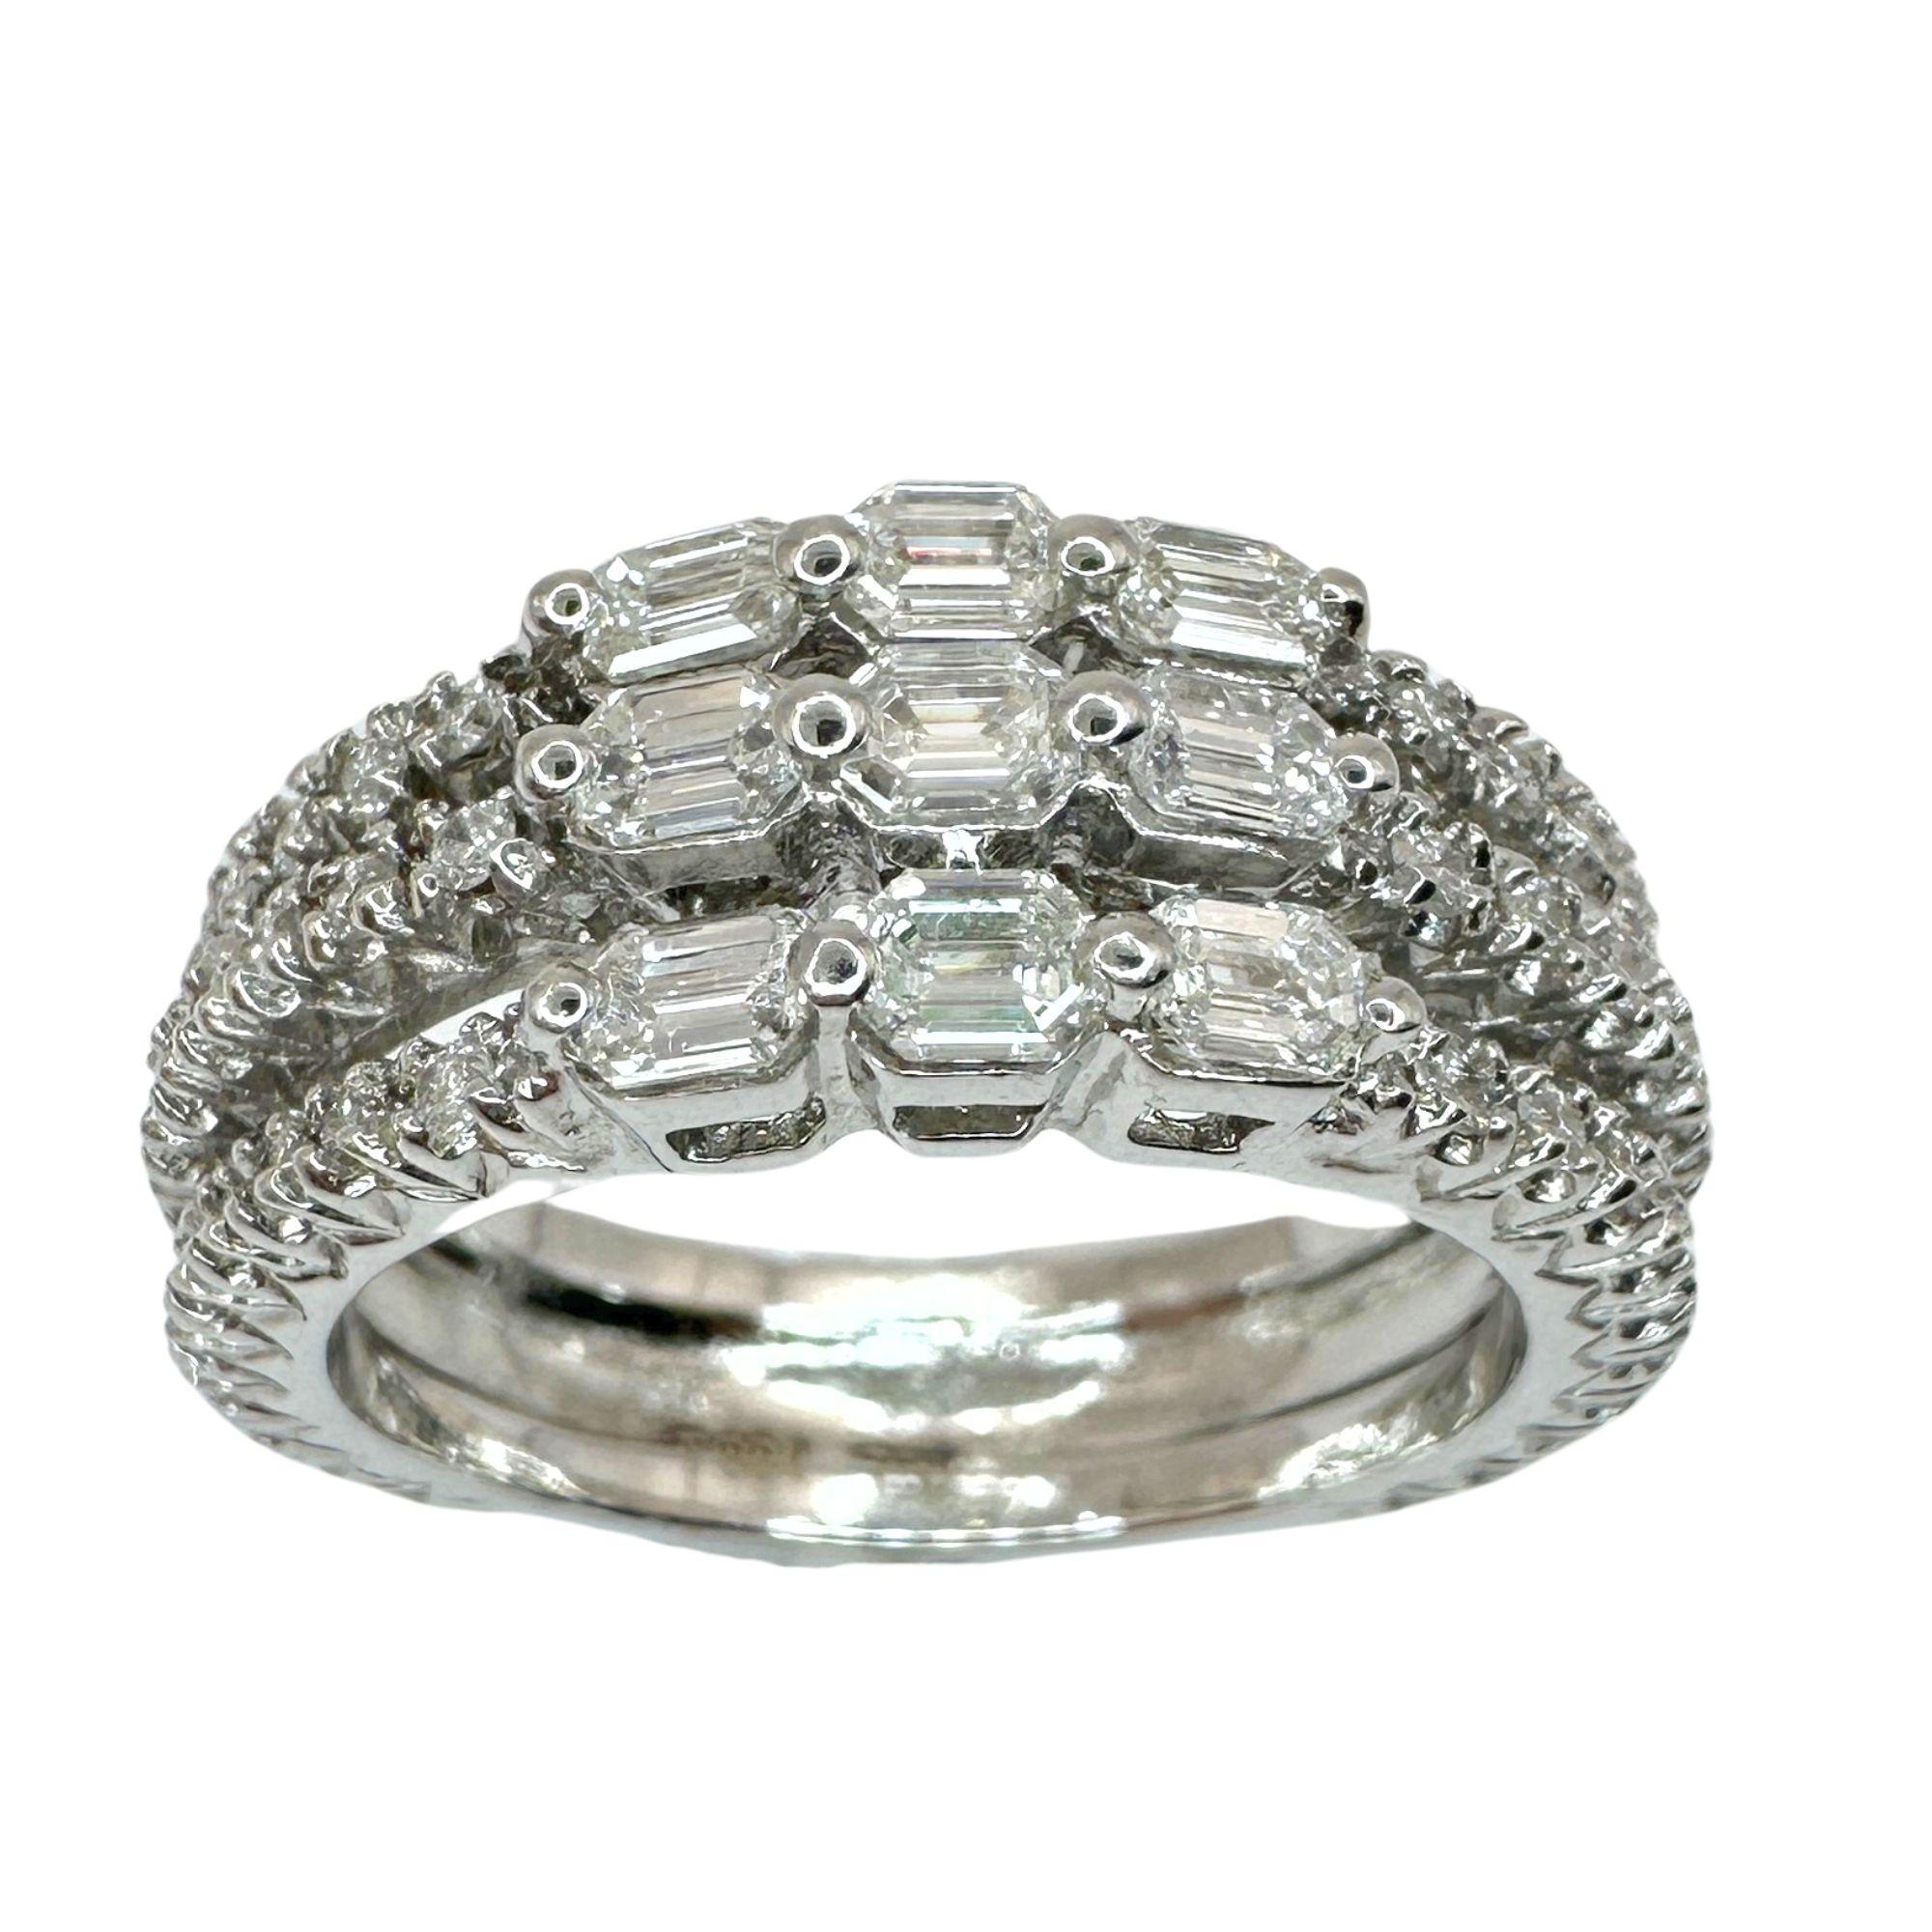 Verströmen Sie Eleganz mit unserem 18k White Gold Emerald Cut Diamond Band Ring. Dieser 8,5 Gramm schwere Ring in Größe 7,25 besteht aus atemberaubenden 0,70 Karat Diamanten im Smaragdschliff, die von 0,67 Karat funkelnden Diamantakzenten